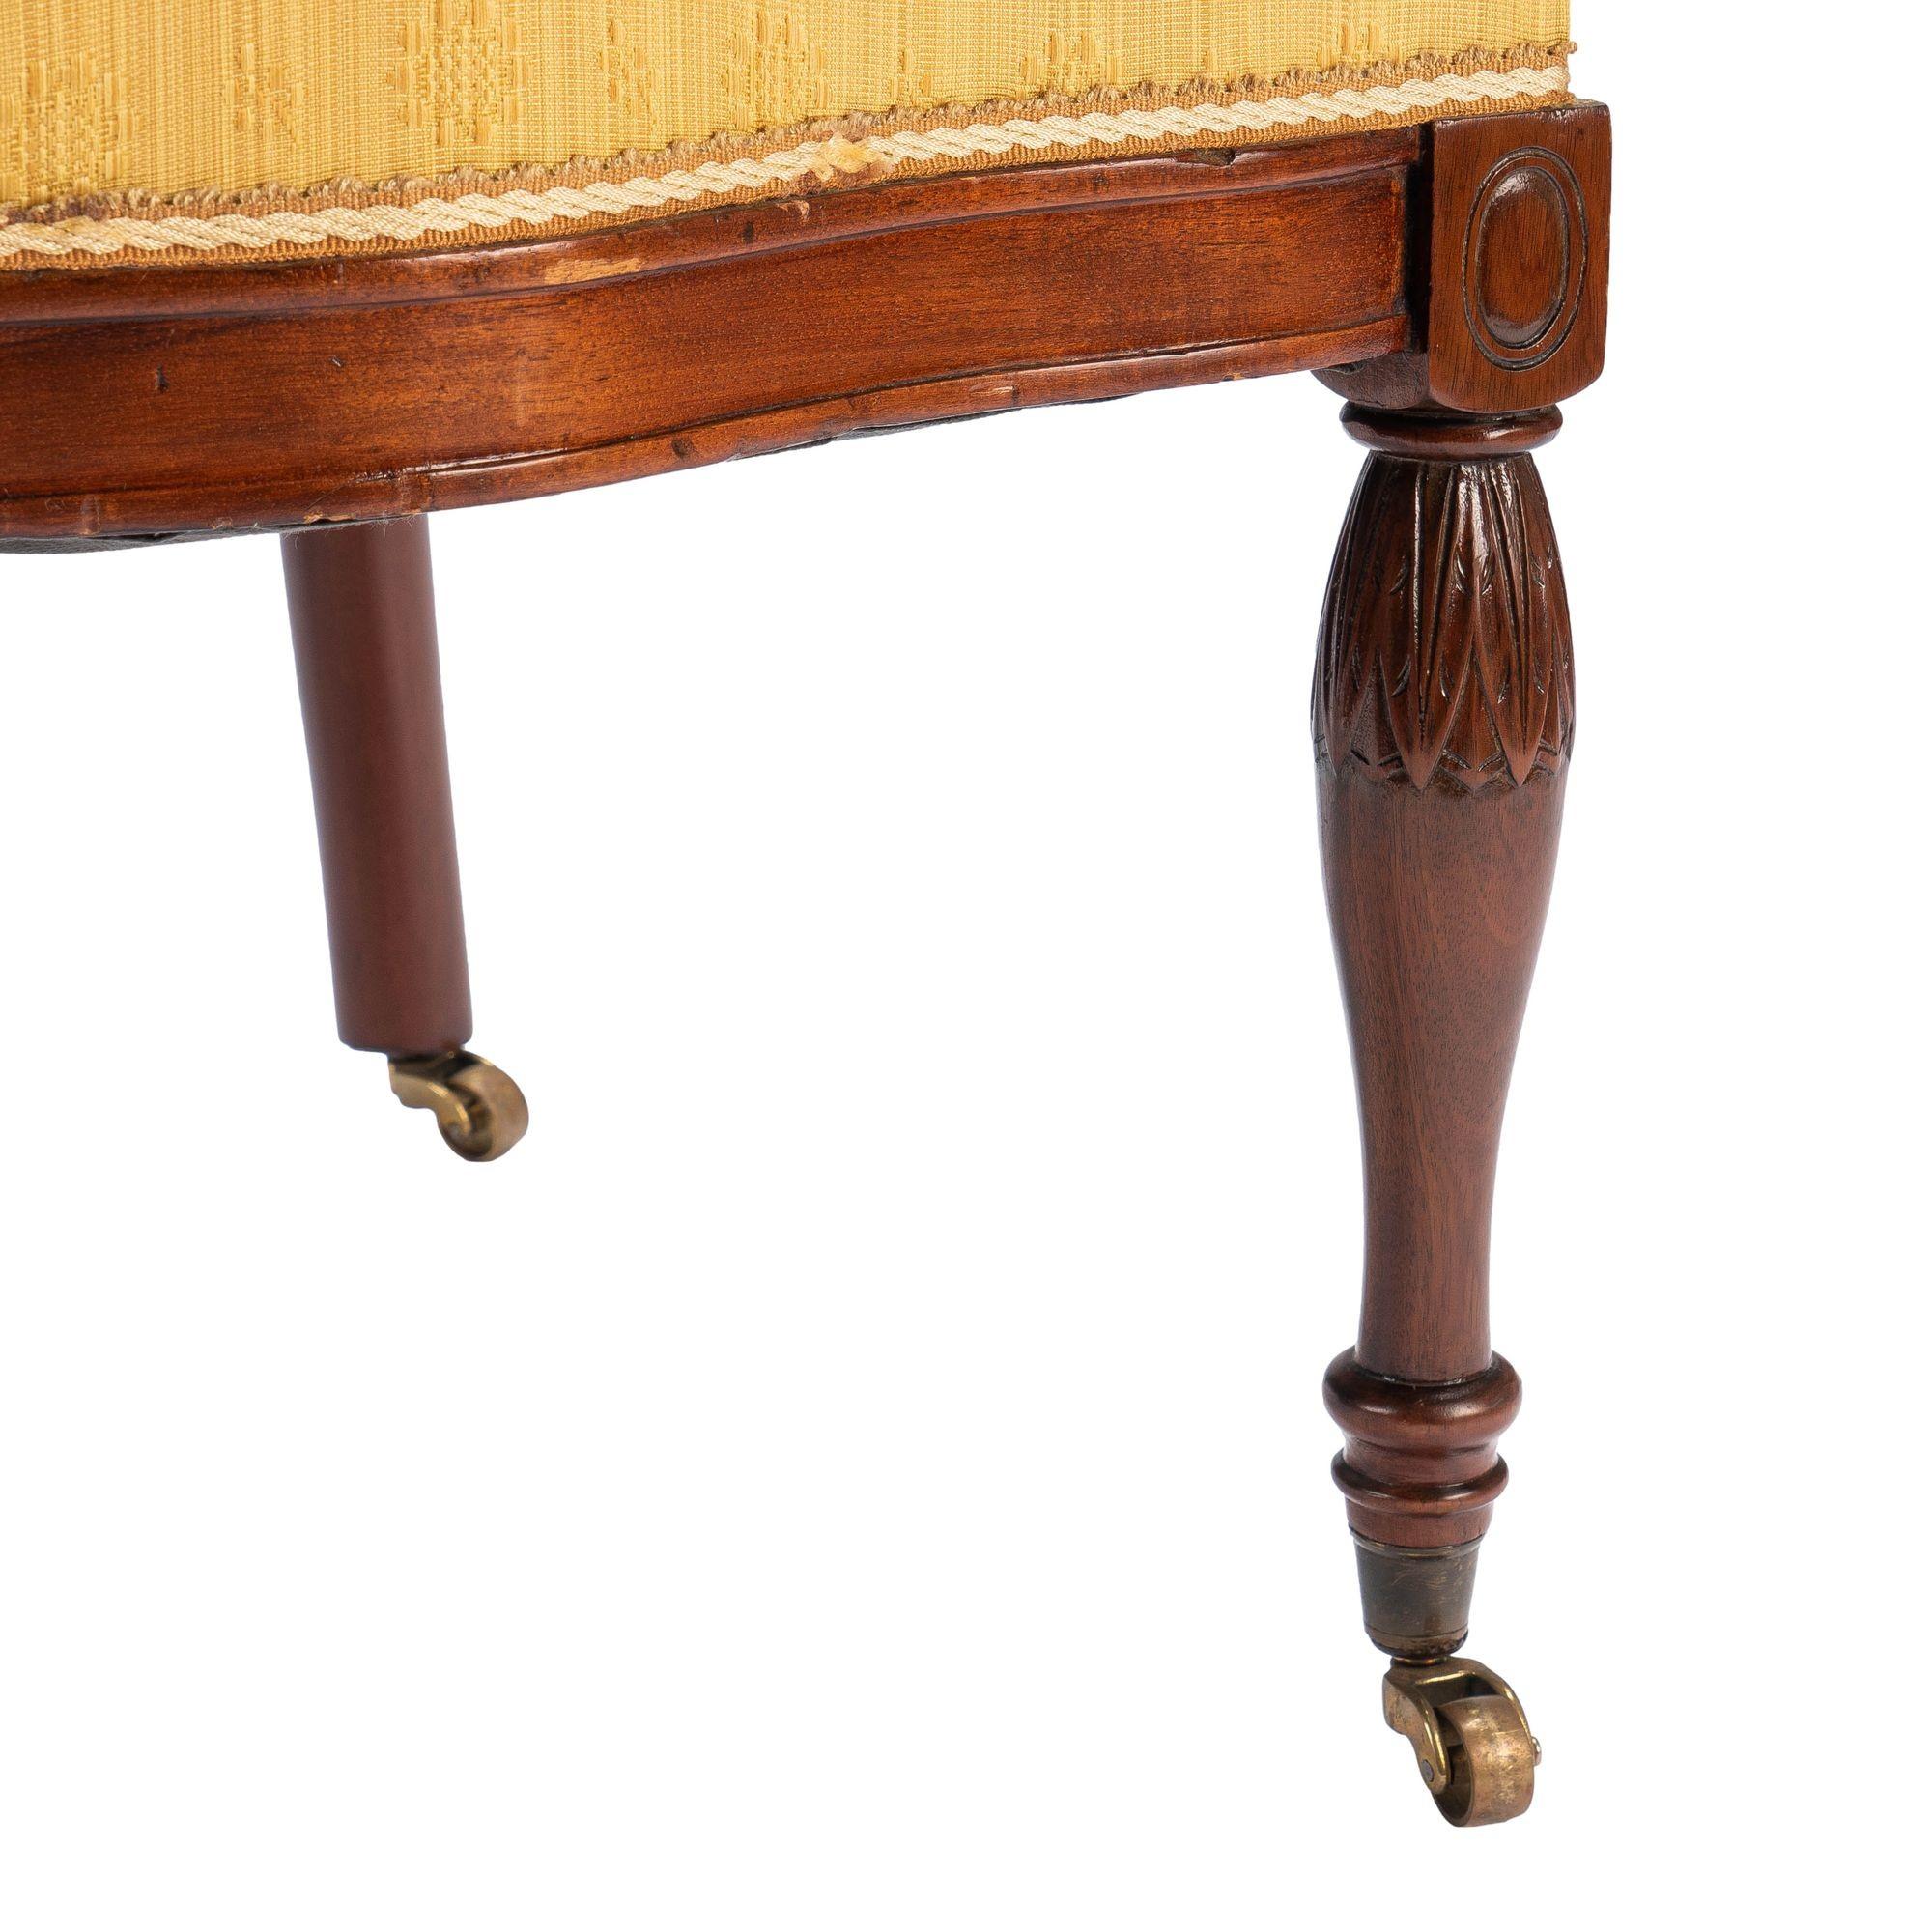 Baltimore Louis XVI Revival Upholstered Slipper Chair, '1850-75' For Sale 7